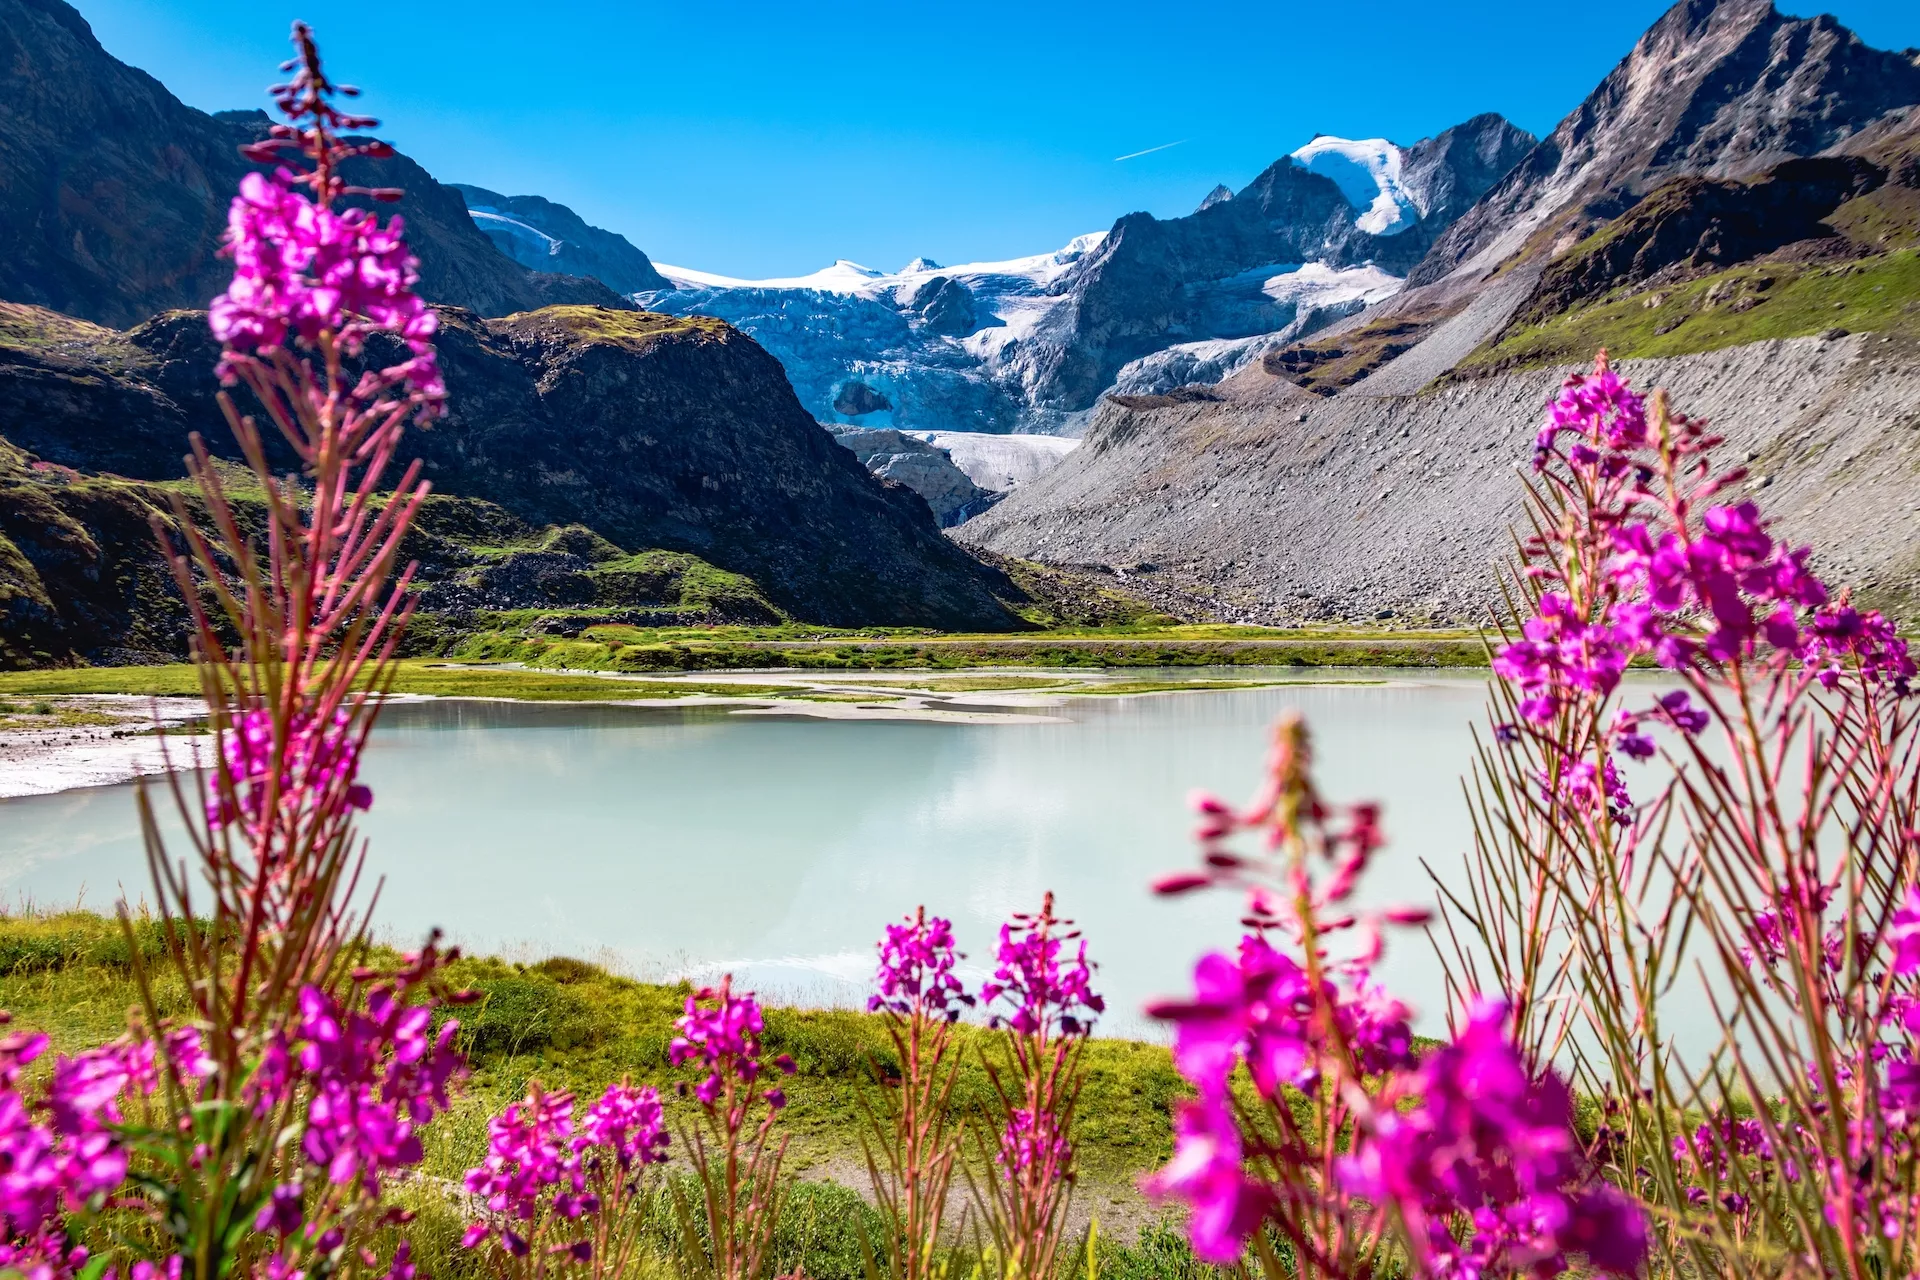 Vista del glaciar Moiry desde el lago de Chateaupre rodeado de flores en verano